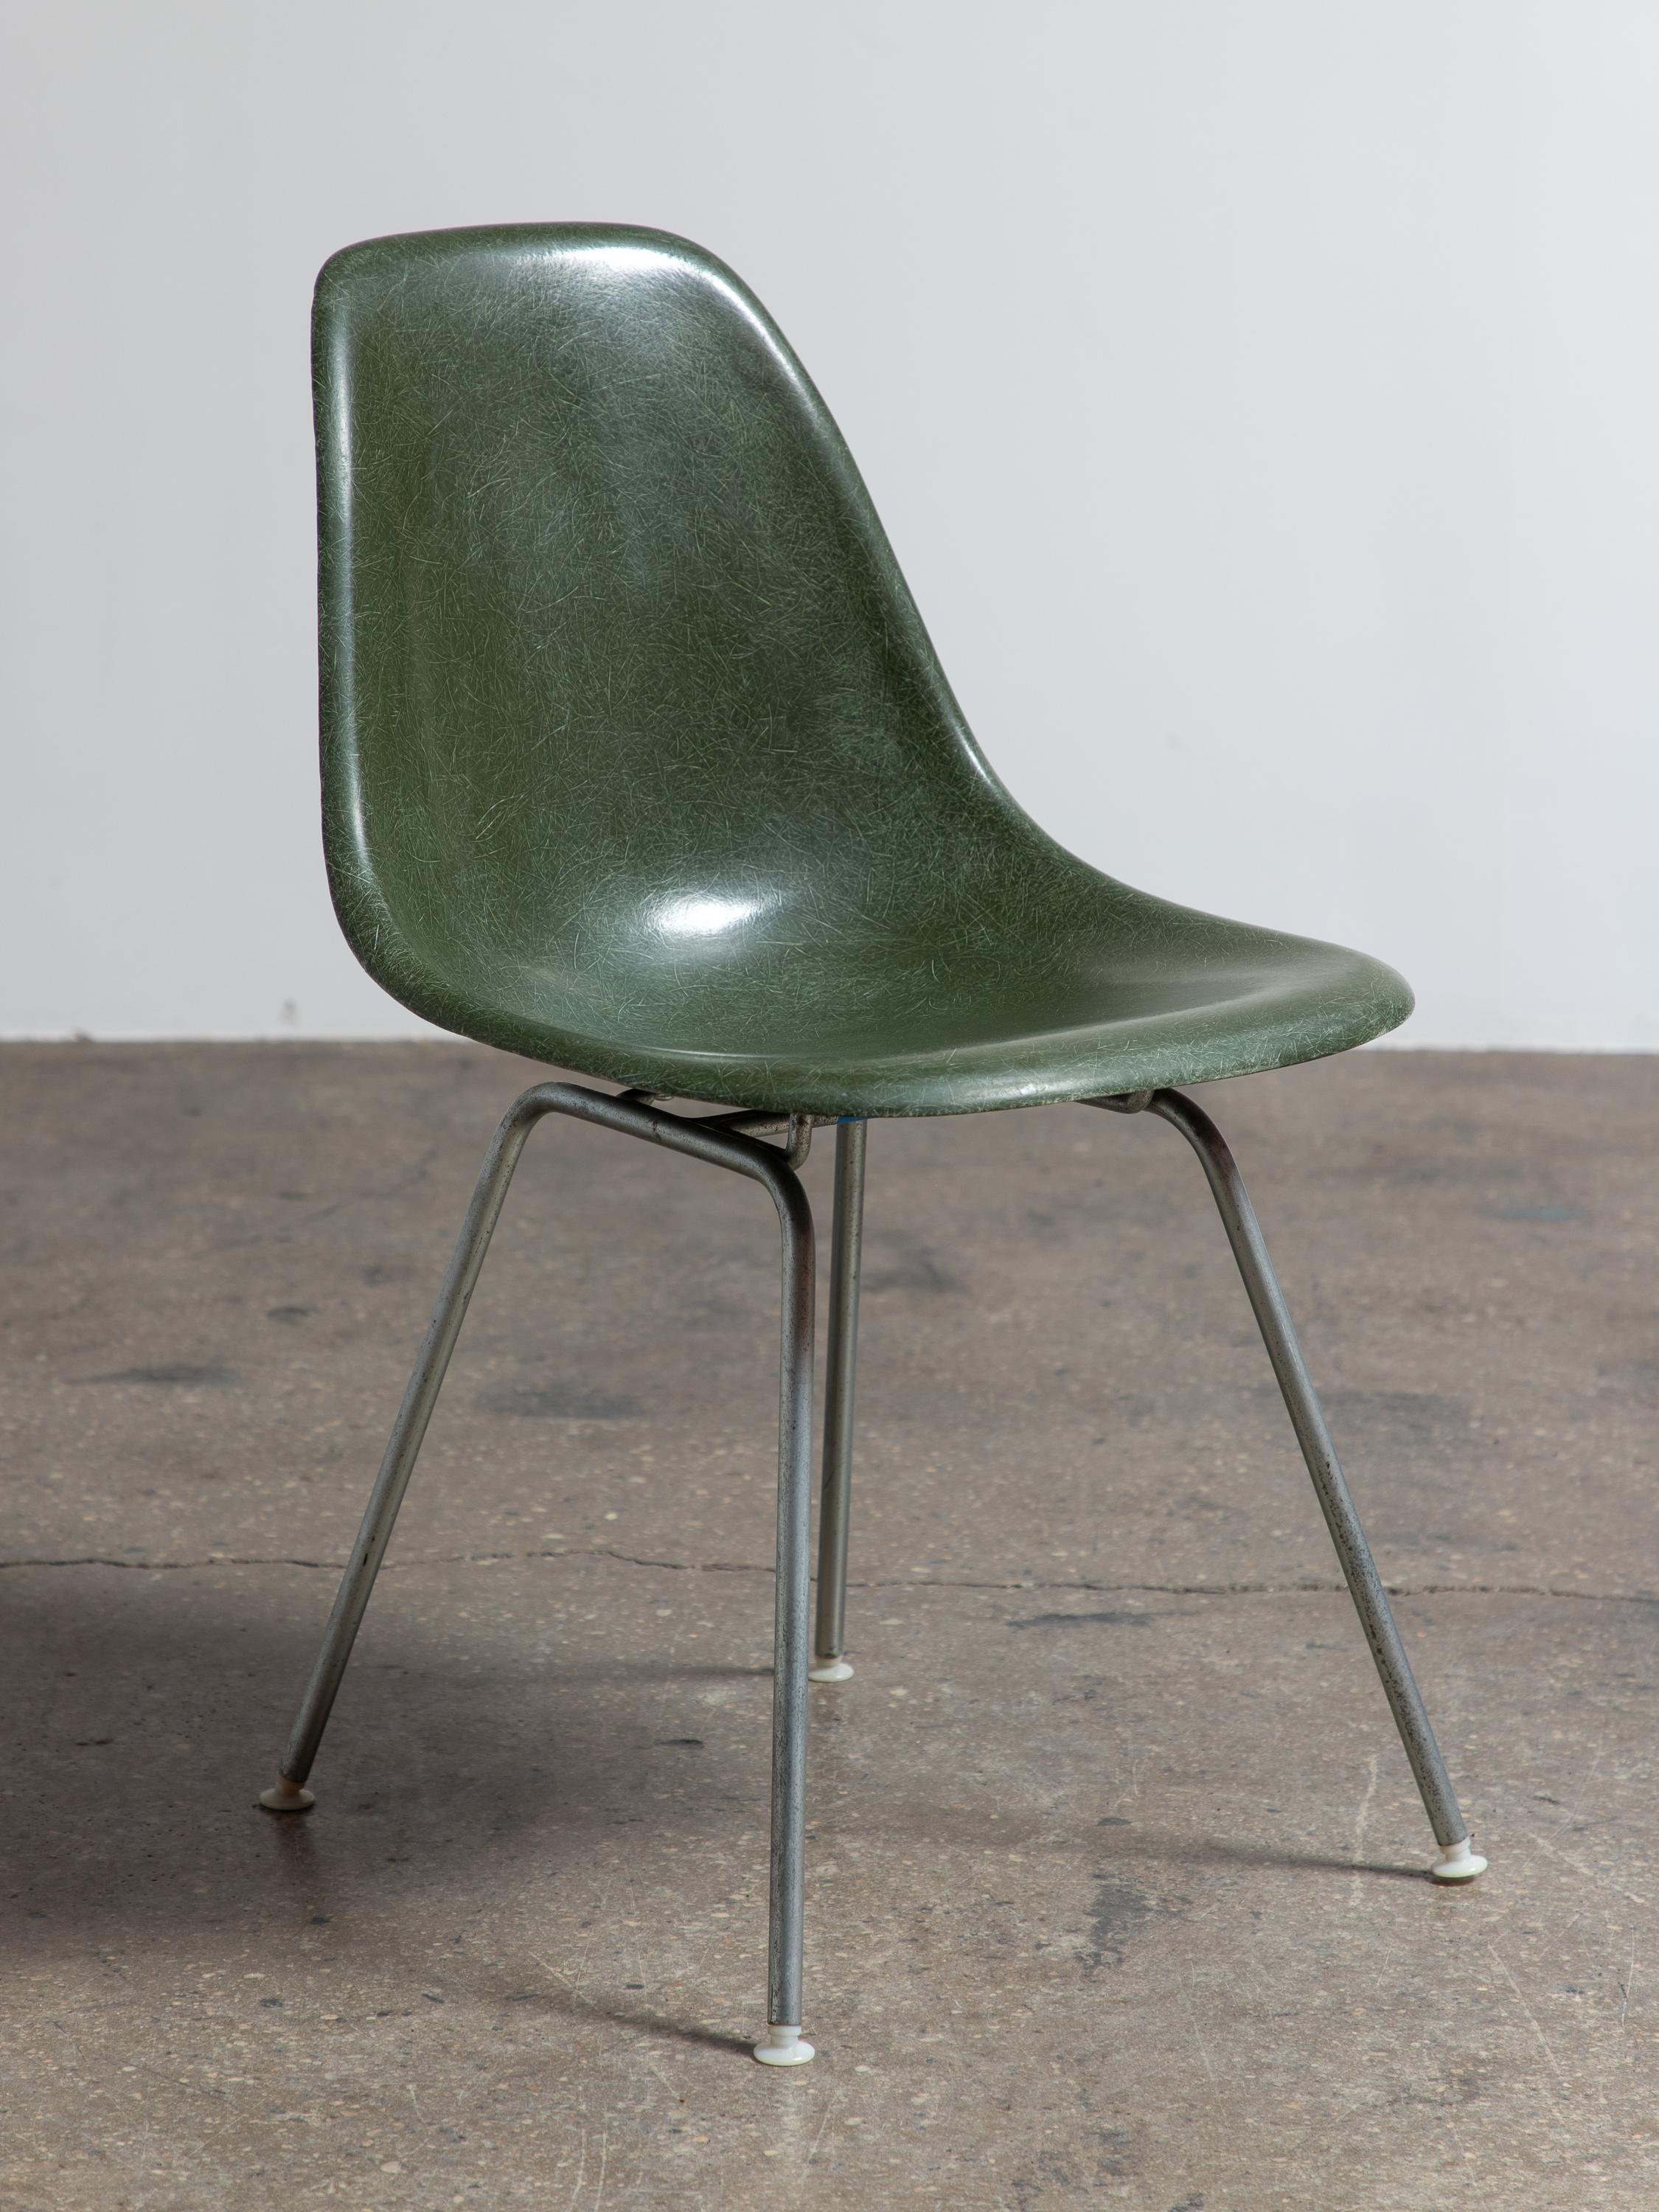 Multiple disponible. Chaise originale en fibre de verre moulée, conçue par Charles et Ray Eames pour Herman Miller. Les chaises vintage à coque sont appréciées pour leur patine attrayante, la texture distincte des fils et la belle profondeur des